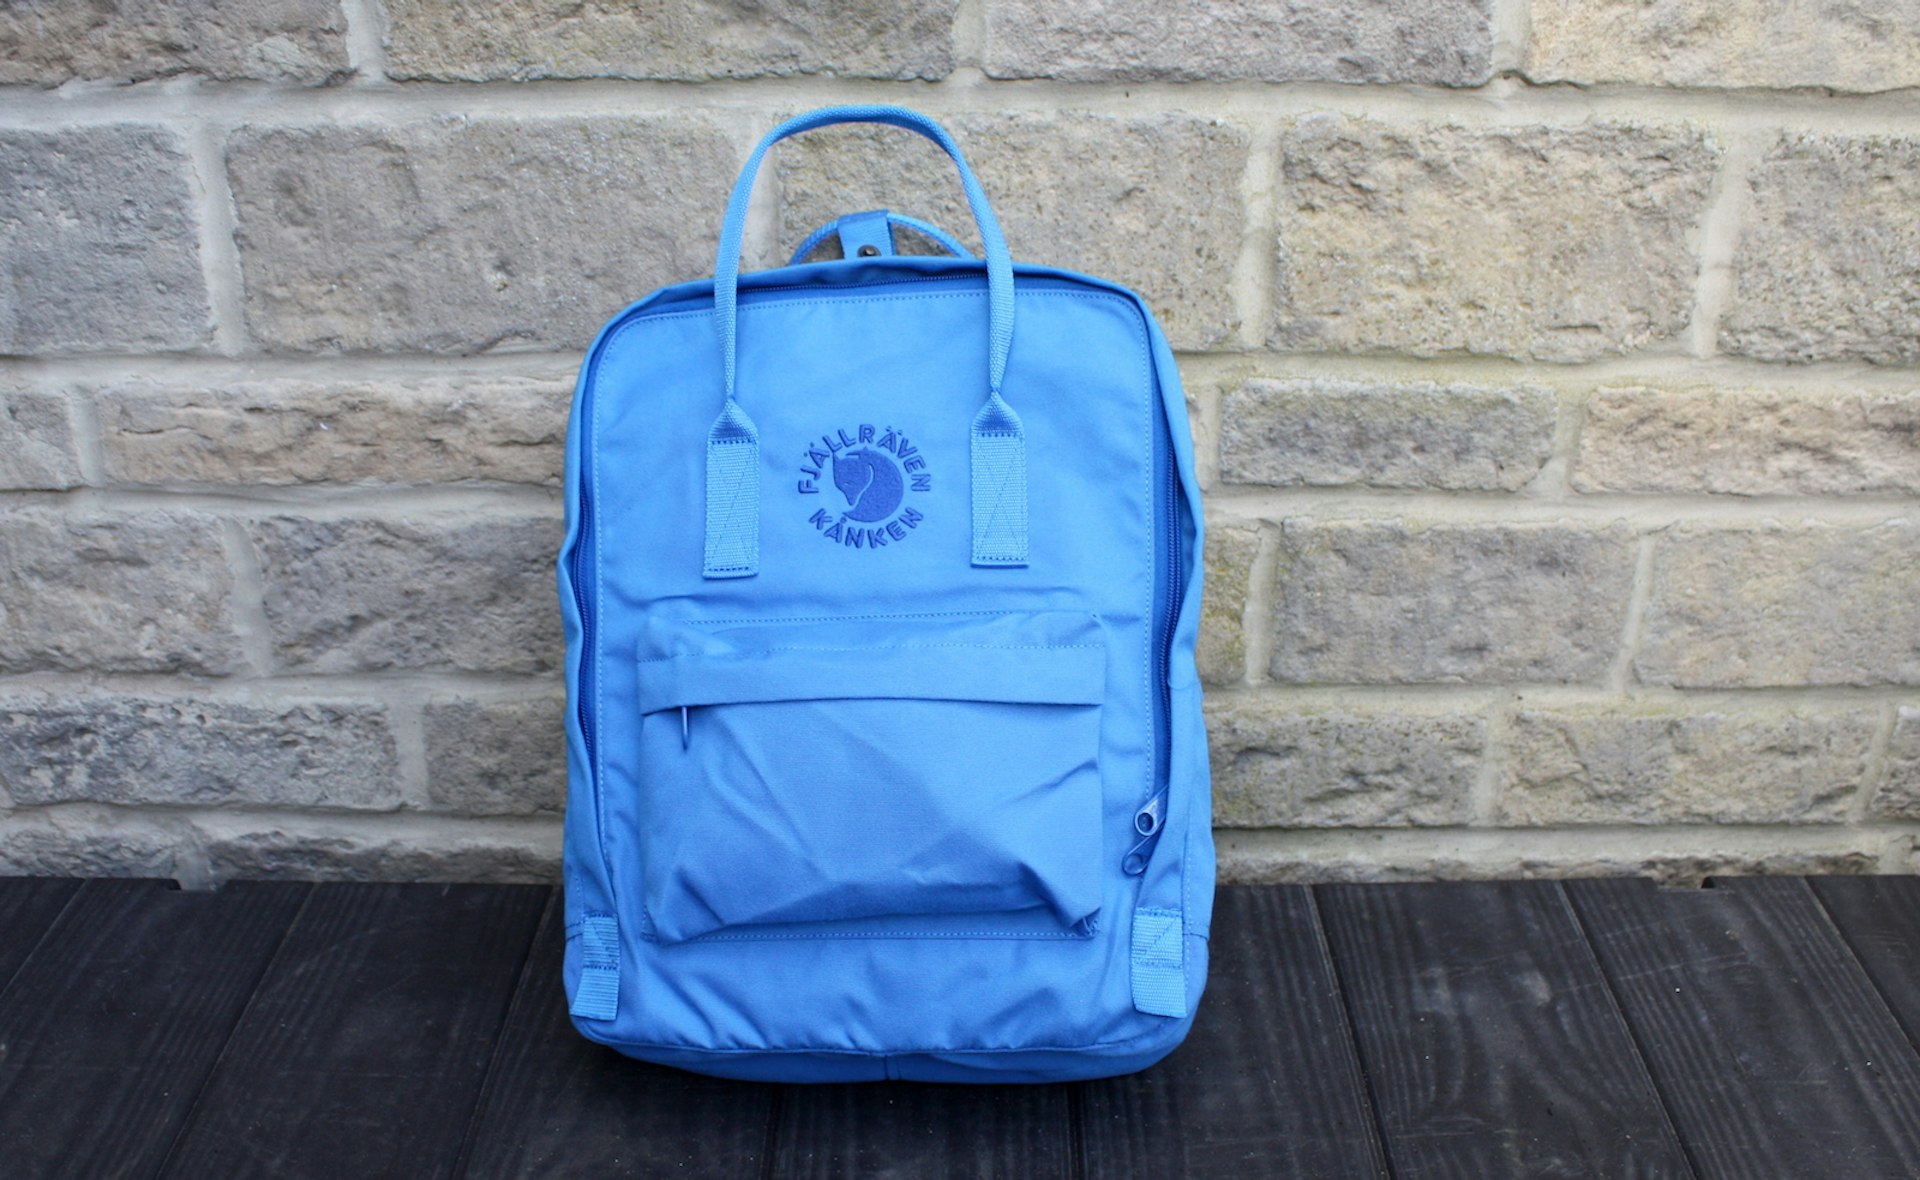 Fjallraven Re-kanken backpack © David Else / Lonely Planet